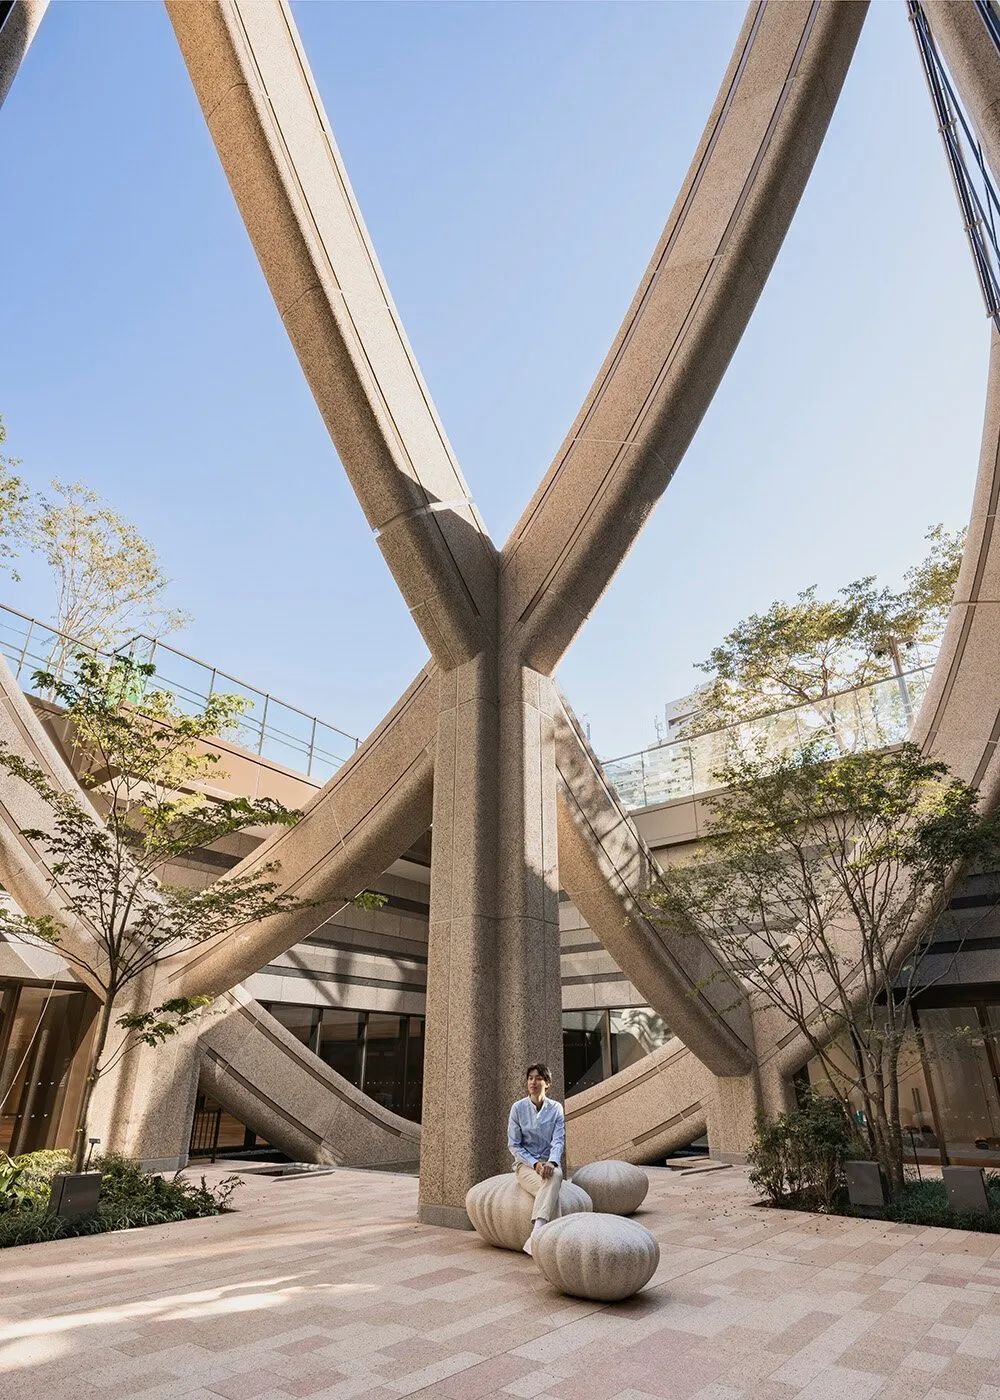 在 Thomas Heatherwick 的構想基礎上，「麻布台Hills」（Azabudai Hills）將東京的新舊建築並置，大小建築相映成趣。居民和訪客可以聚集在一起，感受包括廣闊的公共花園、中央廣場和「雲」活動空間在內的獨特景觀。在長達三十年的都更過程中，森大廈株式會社與 300 多名居民和商業公司進行了合作，使該地區煥發出勃勃生機。現在，90% 以上的原租戶和企業已選擇重返新區